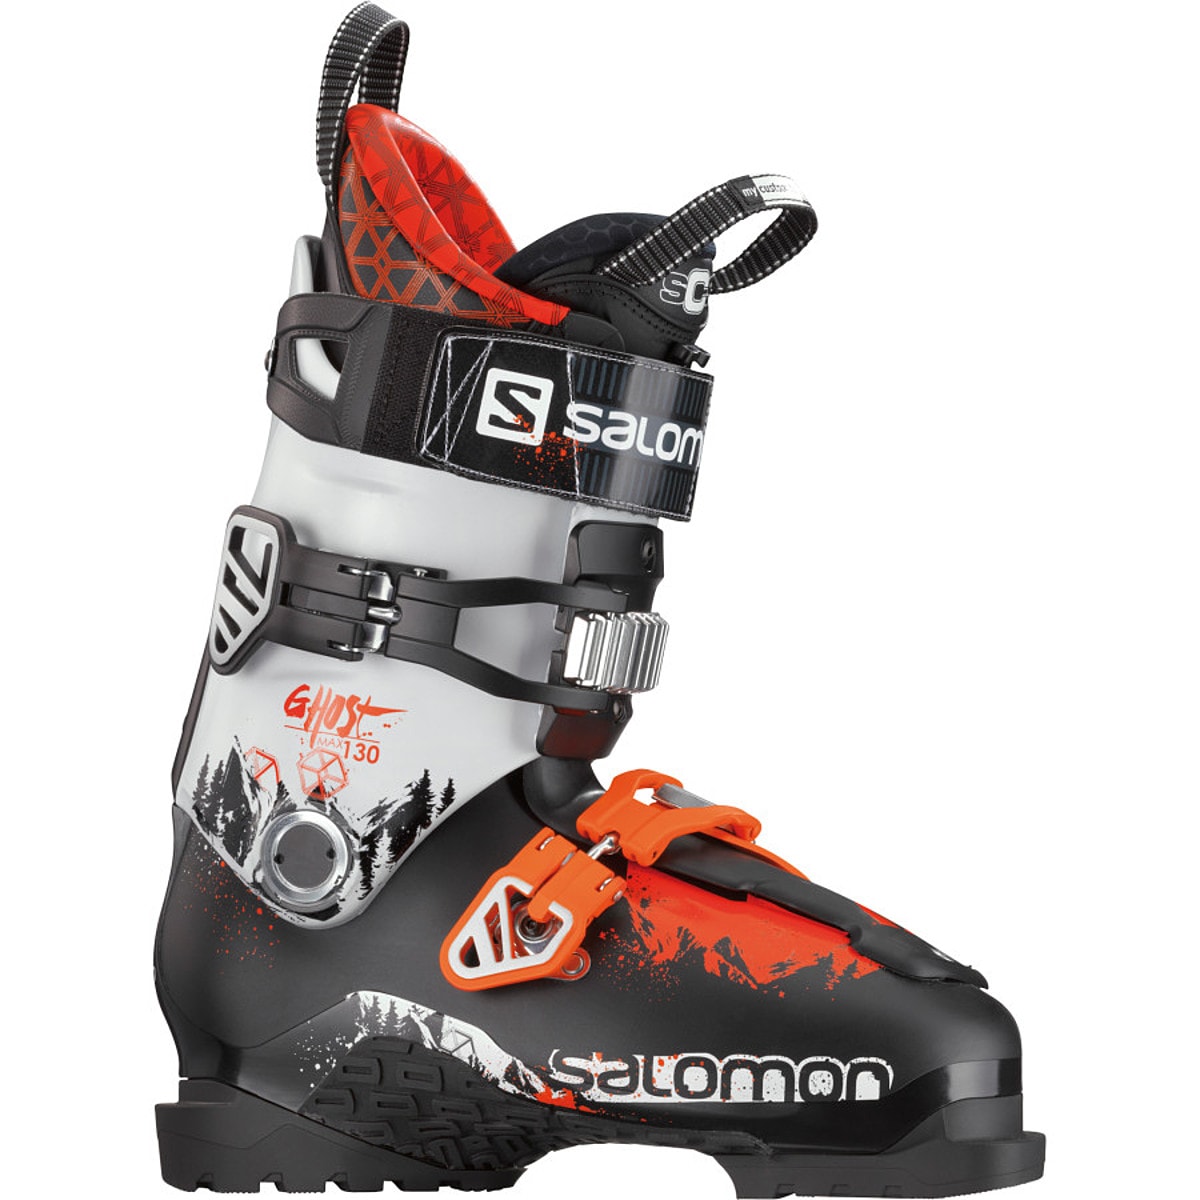 Salomon Ghost Max 130 Ski Boot - Men's - Ski